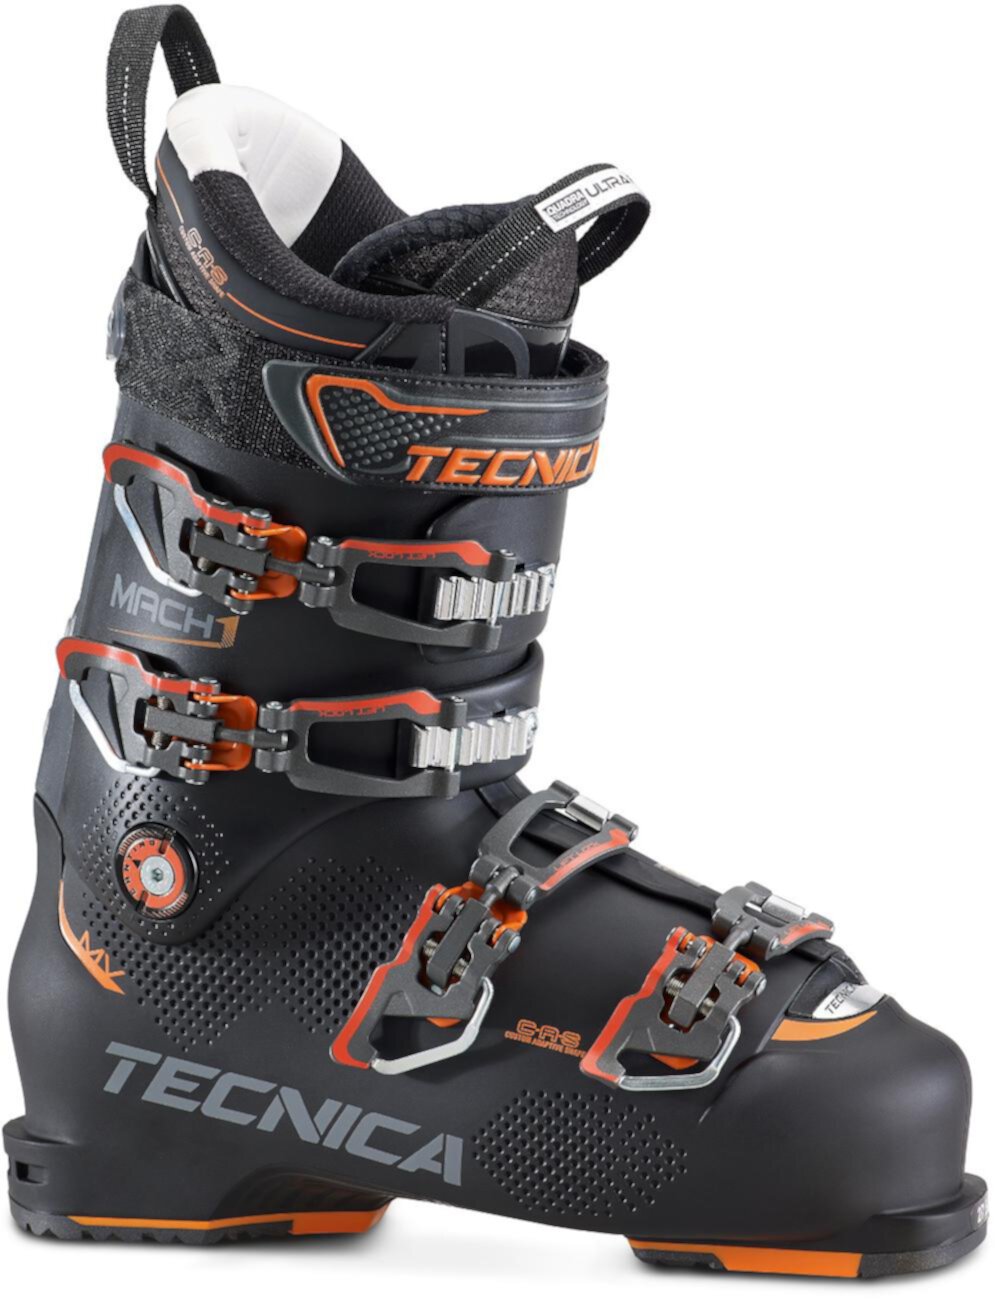 Лыжные ботинки Mach1 100 MV - мужские - 2017/2018 Tecnica